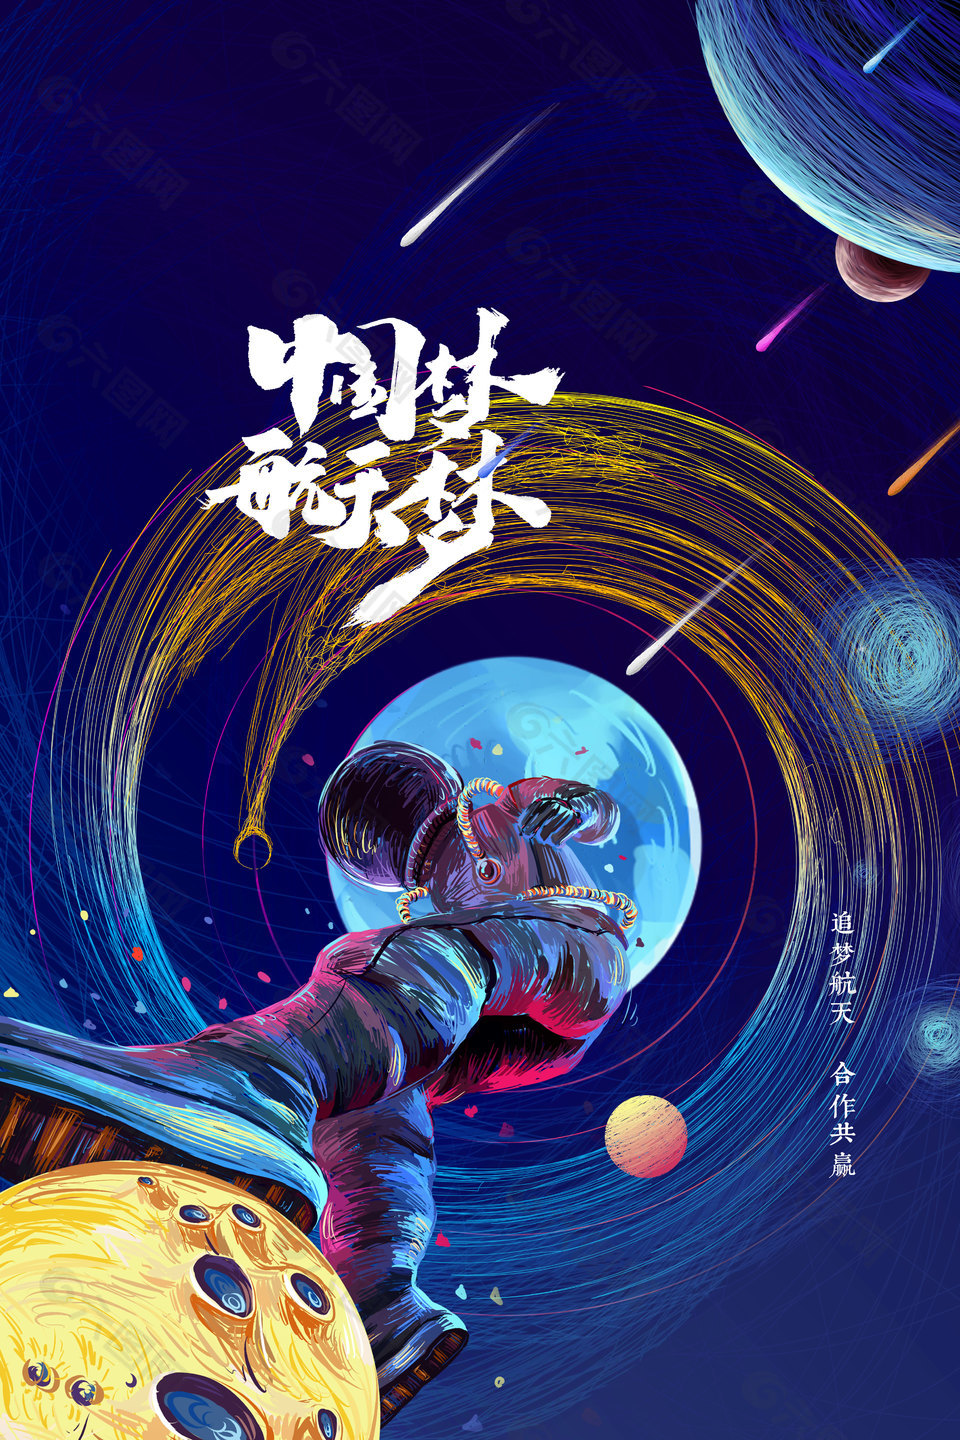 创意星空简洁中国航天日海报